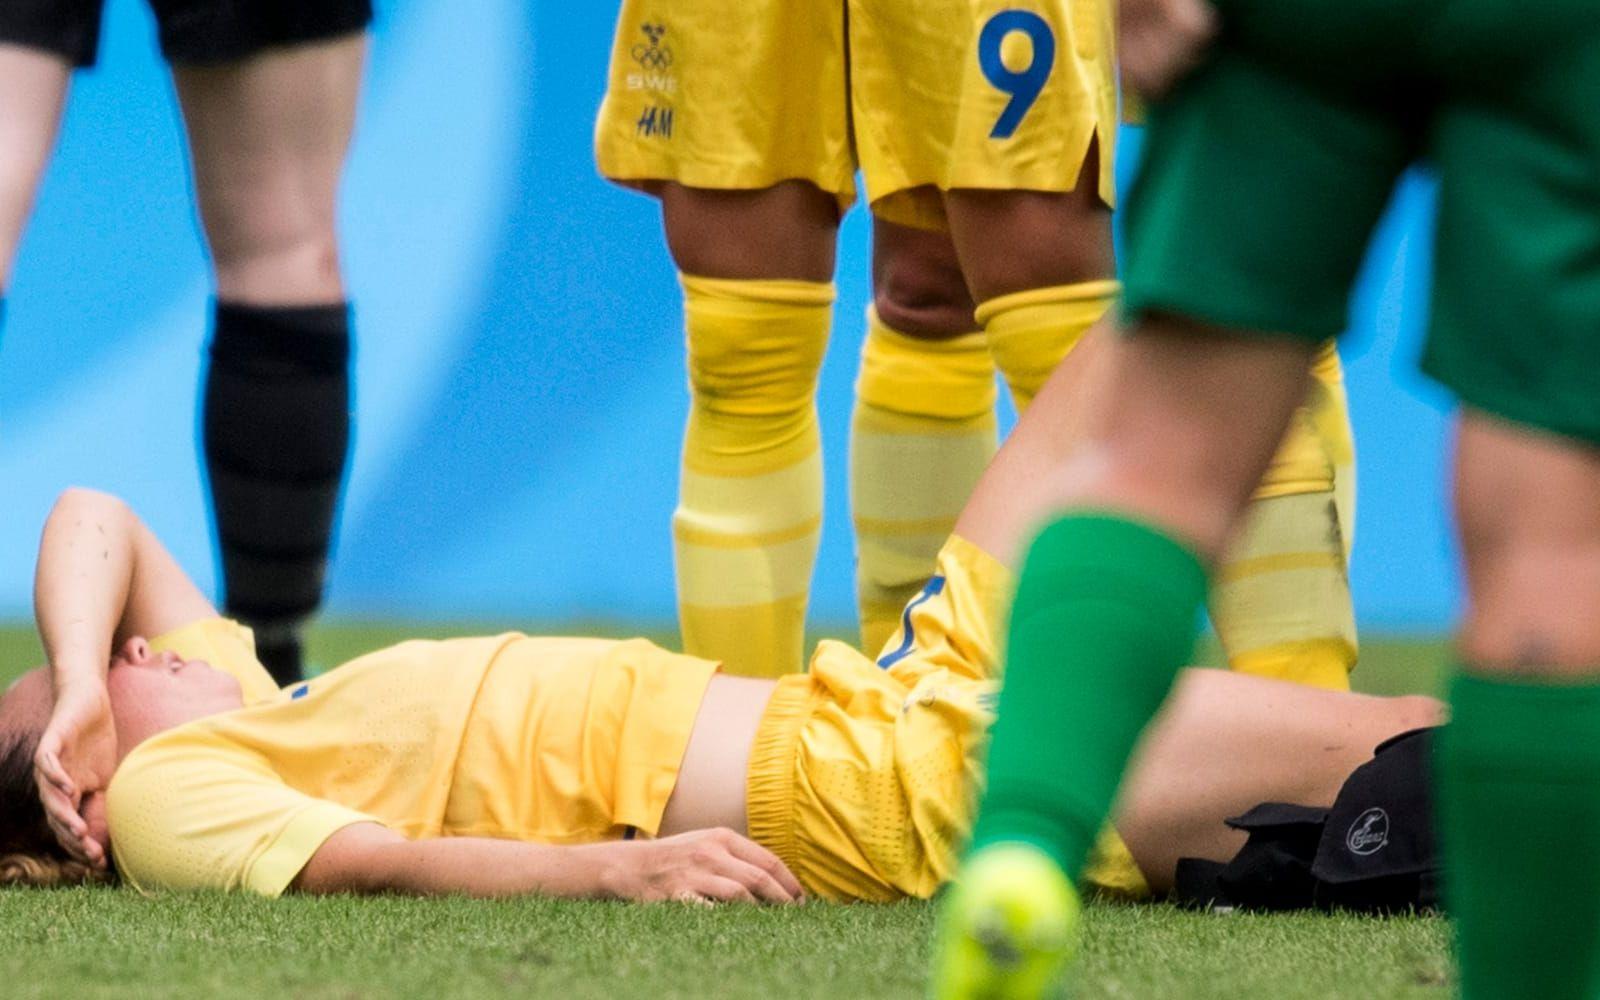 Värre såg det ut när duktiga Jessica Samuelsson fick en smäll mot foten i slutet av matchen. Bild: Petter Arvidson/Bildbyrån